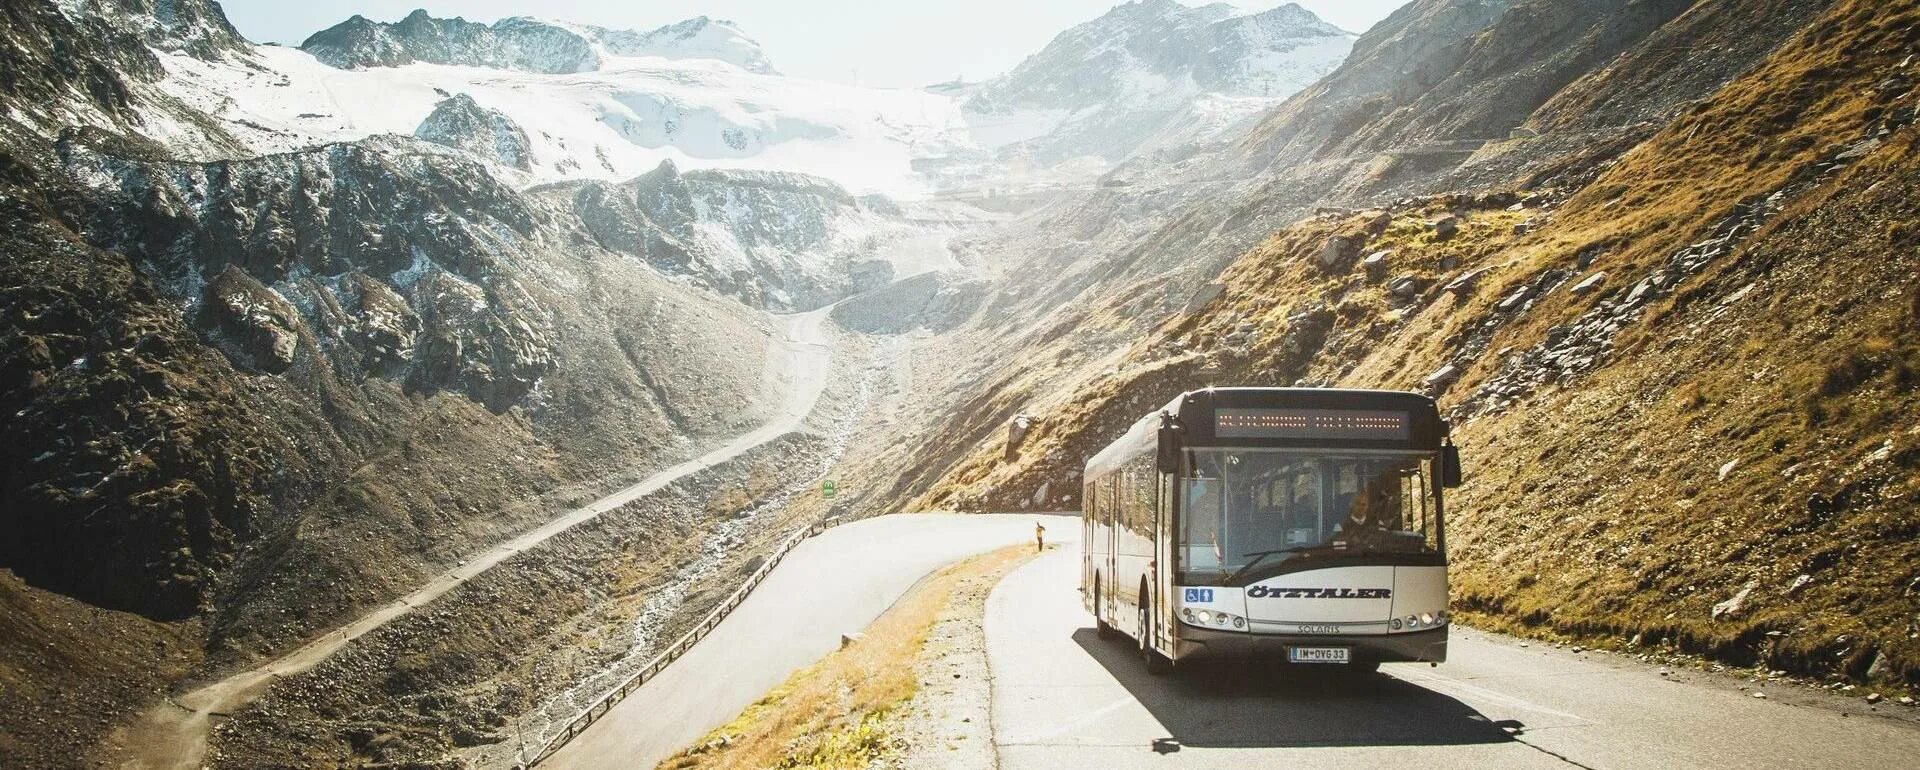 Автобусные туры на кавказ. Автобусный тур на Кавказ. Автобус тур Кавказ. Трансфер в горы. Автобус экскурсионный горы.